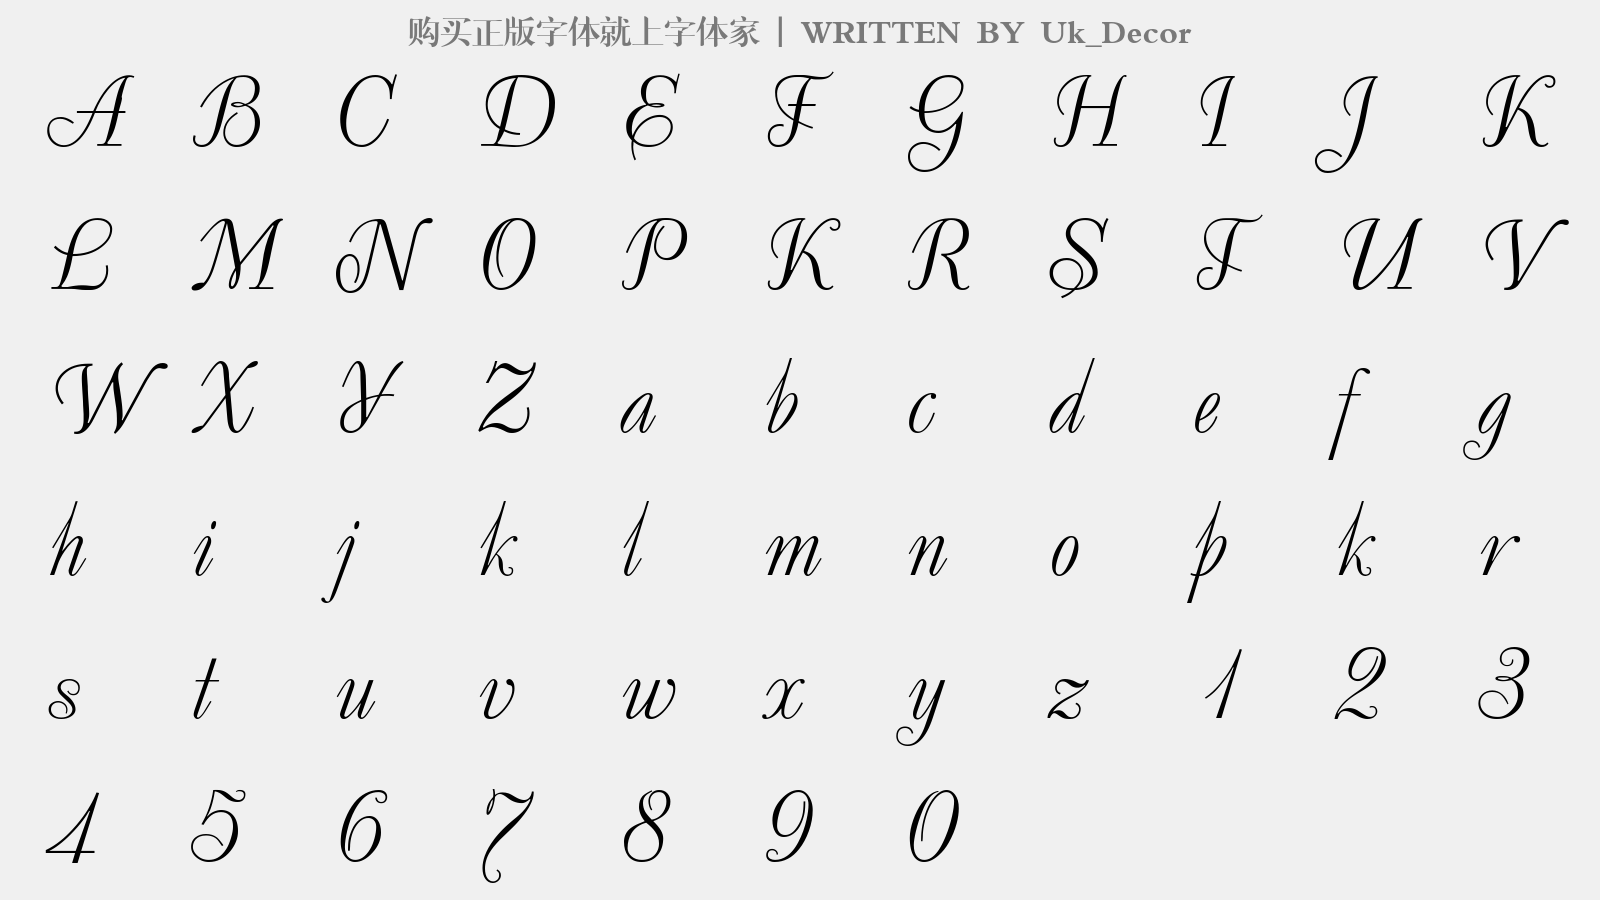 Uk_Decor - 大写字母/小写字母/数字